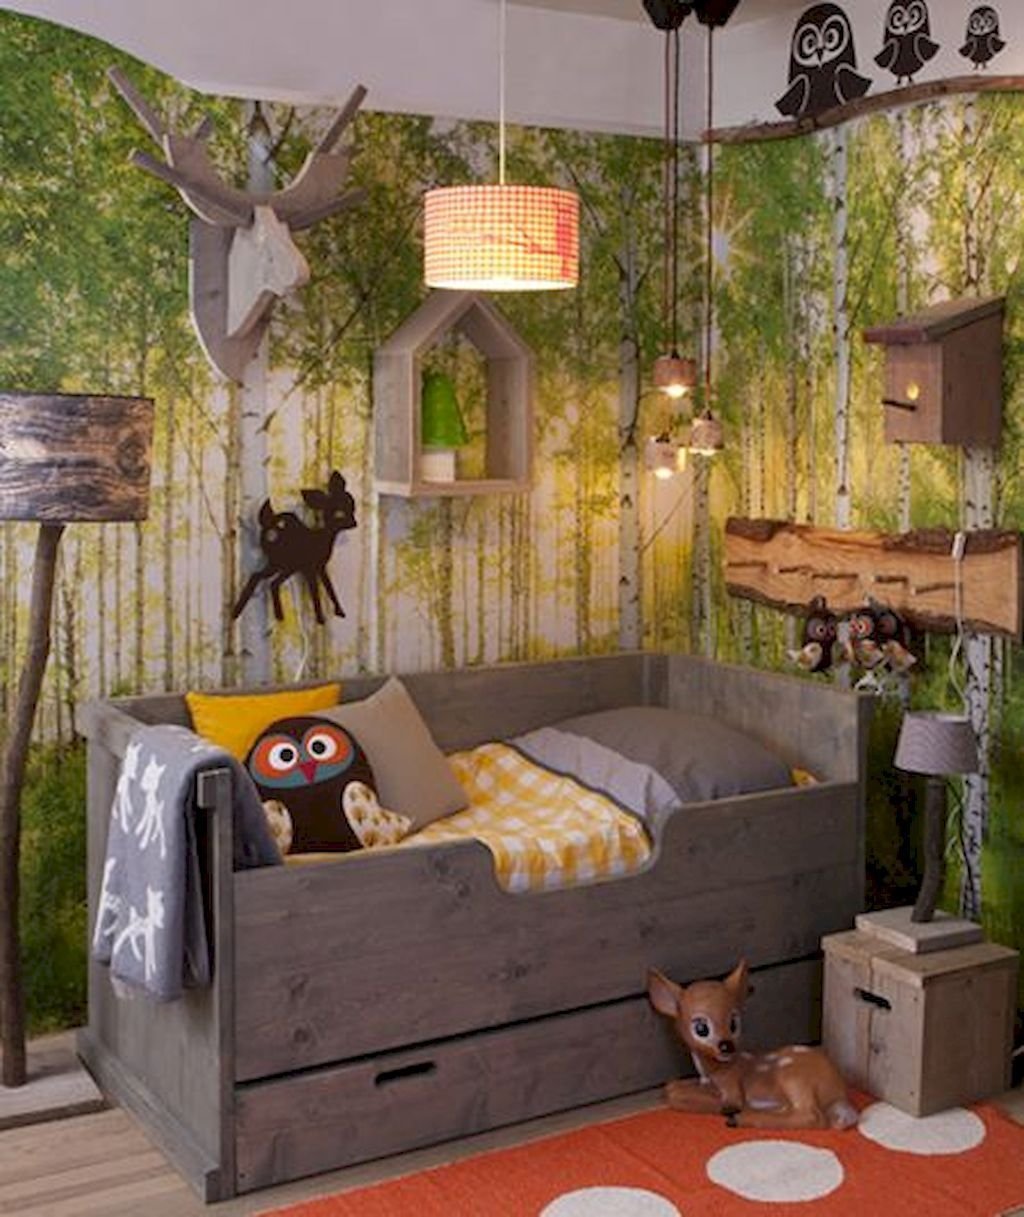 спальня в стиле джунгли